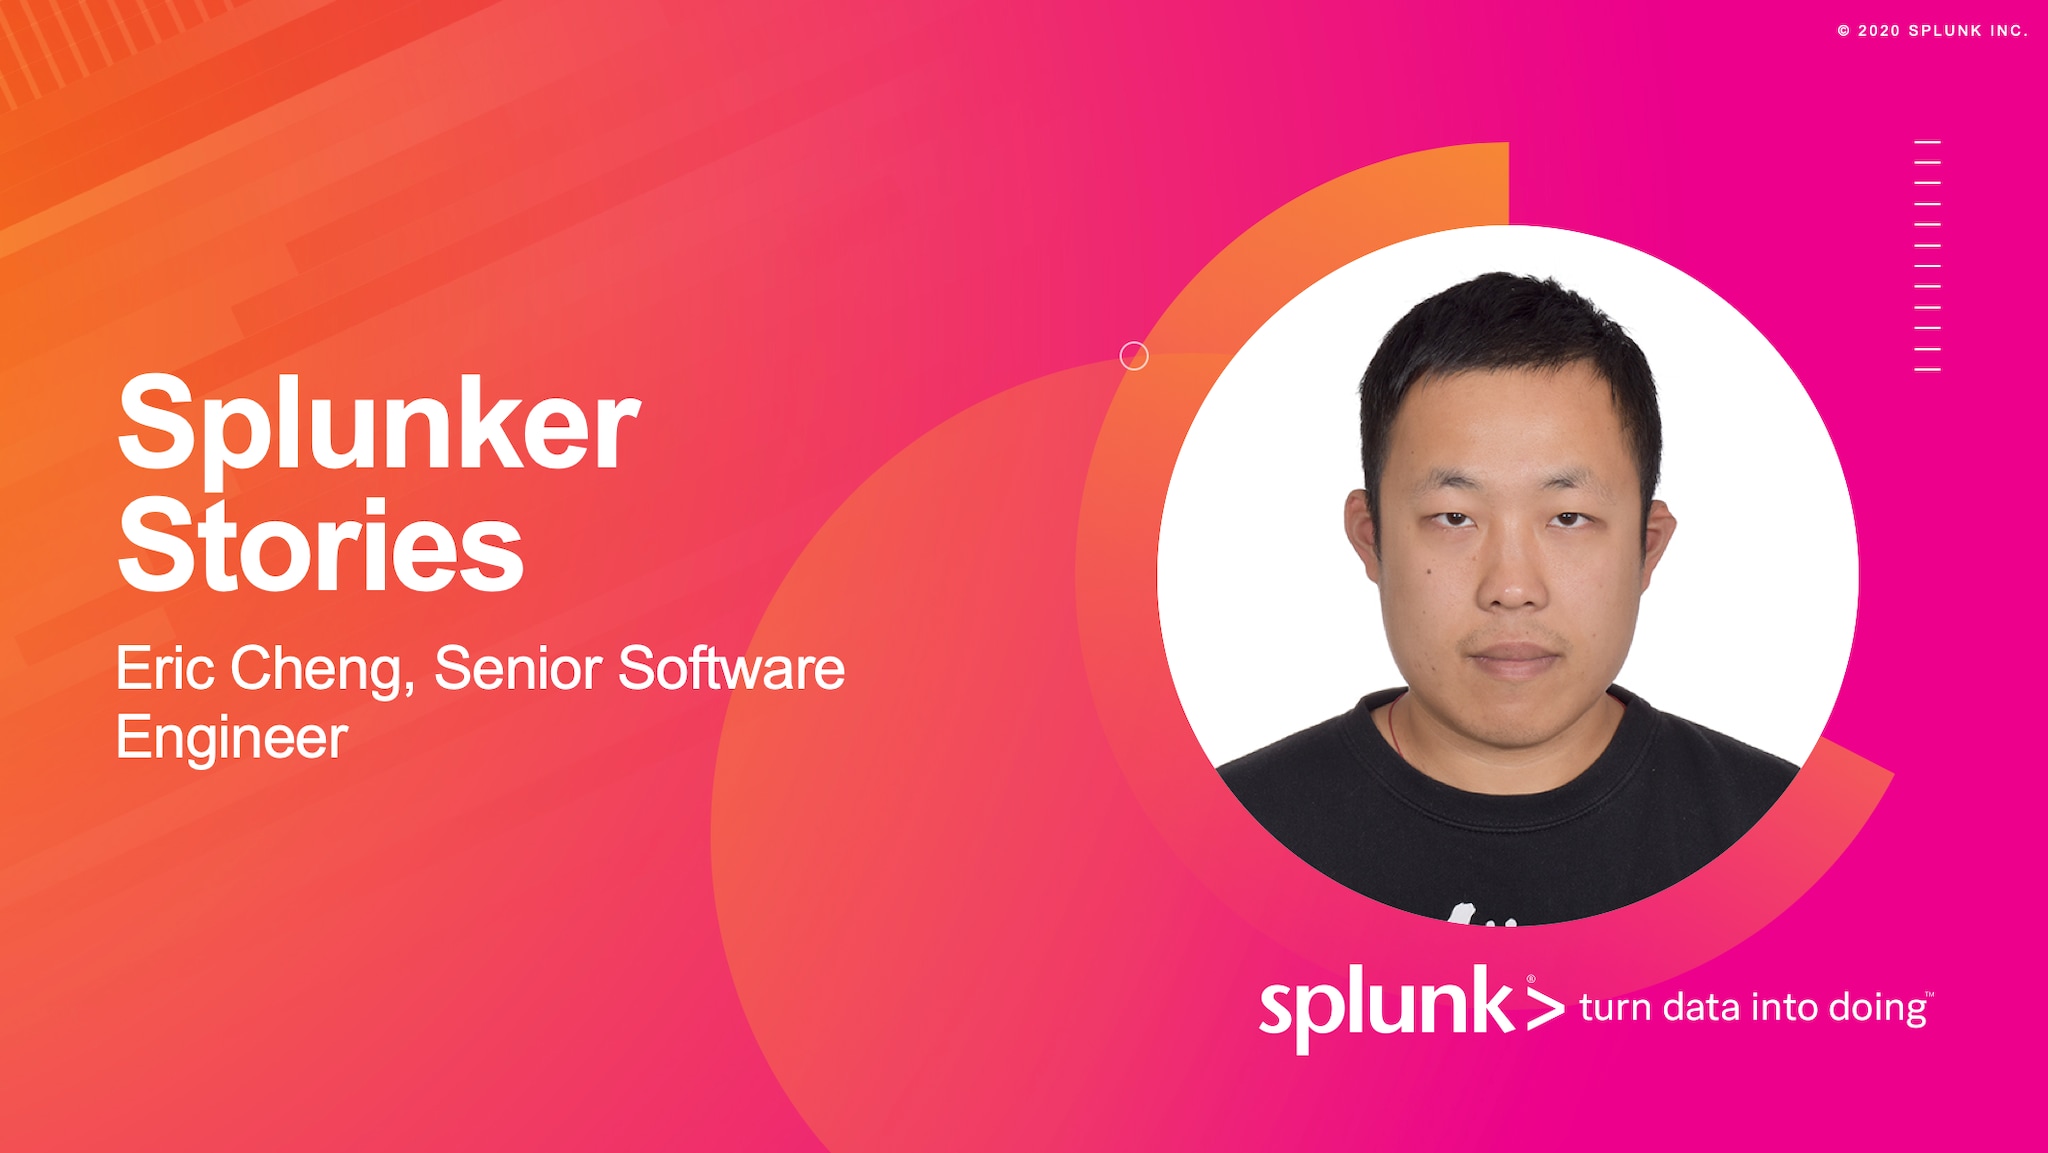 Splunker Stories: Eric Cheng, Senior Software Engineer